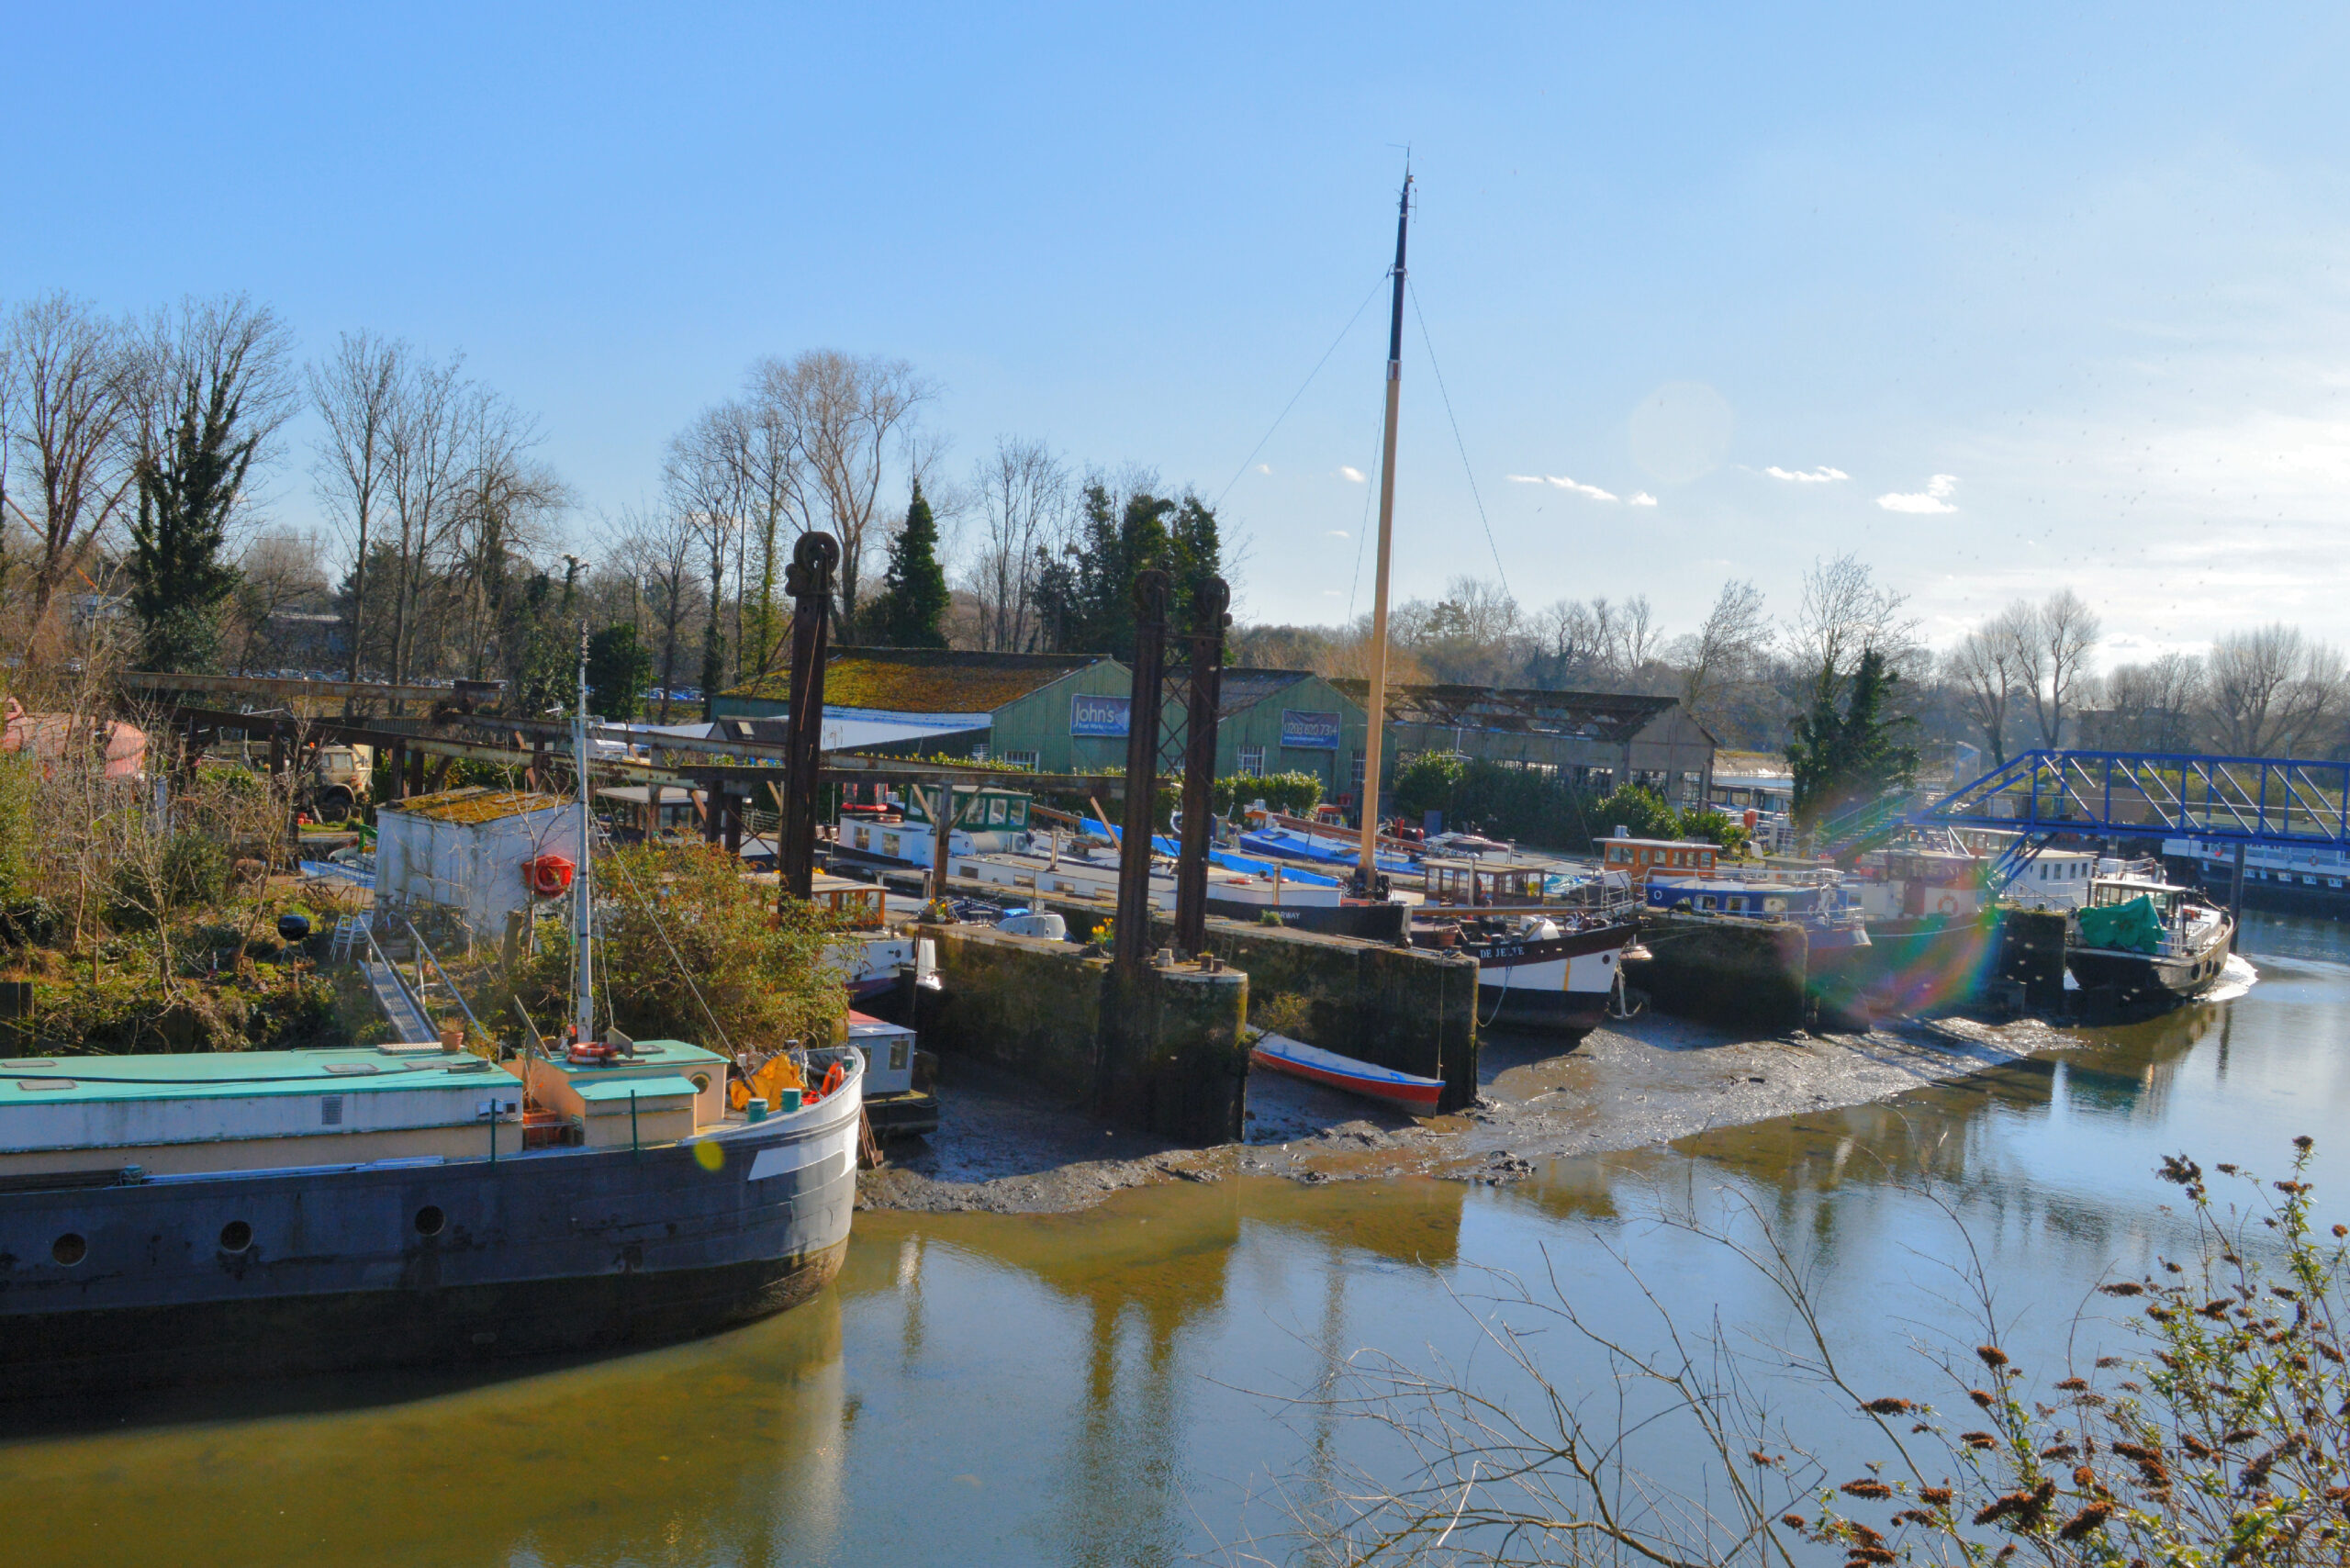 John’s Boat Works Ltd – Lots Ait Boat Yard